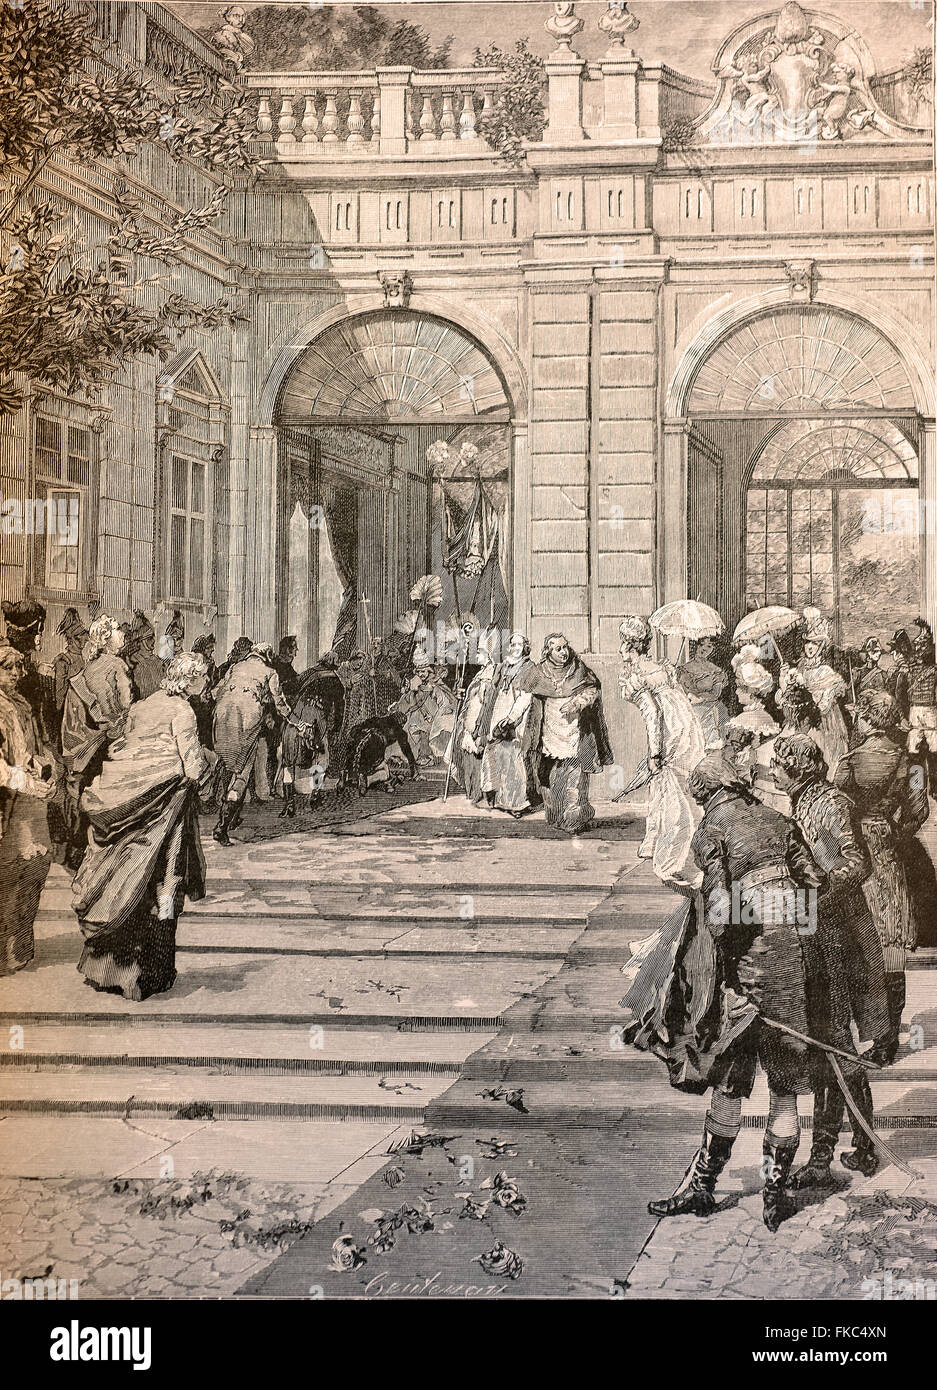 Risorgimento italien 1814 - Le Retour du pape Pie VII à Rome, Carlo Emanuele IV embrasse son pied entrant dans la Basilique Saint-Pierre Banque D'Images